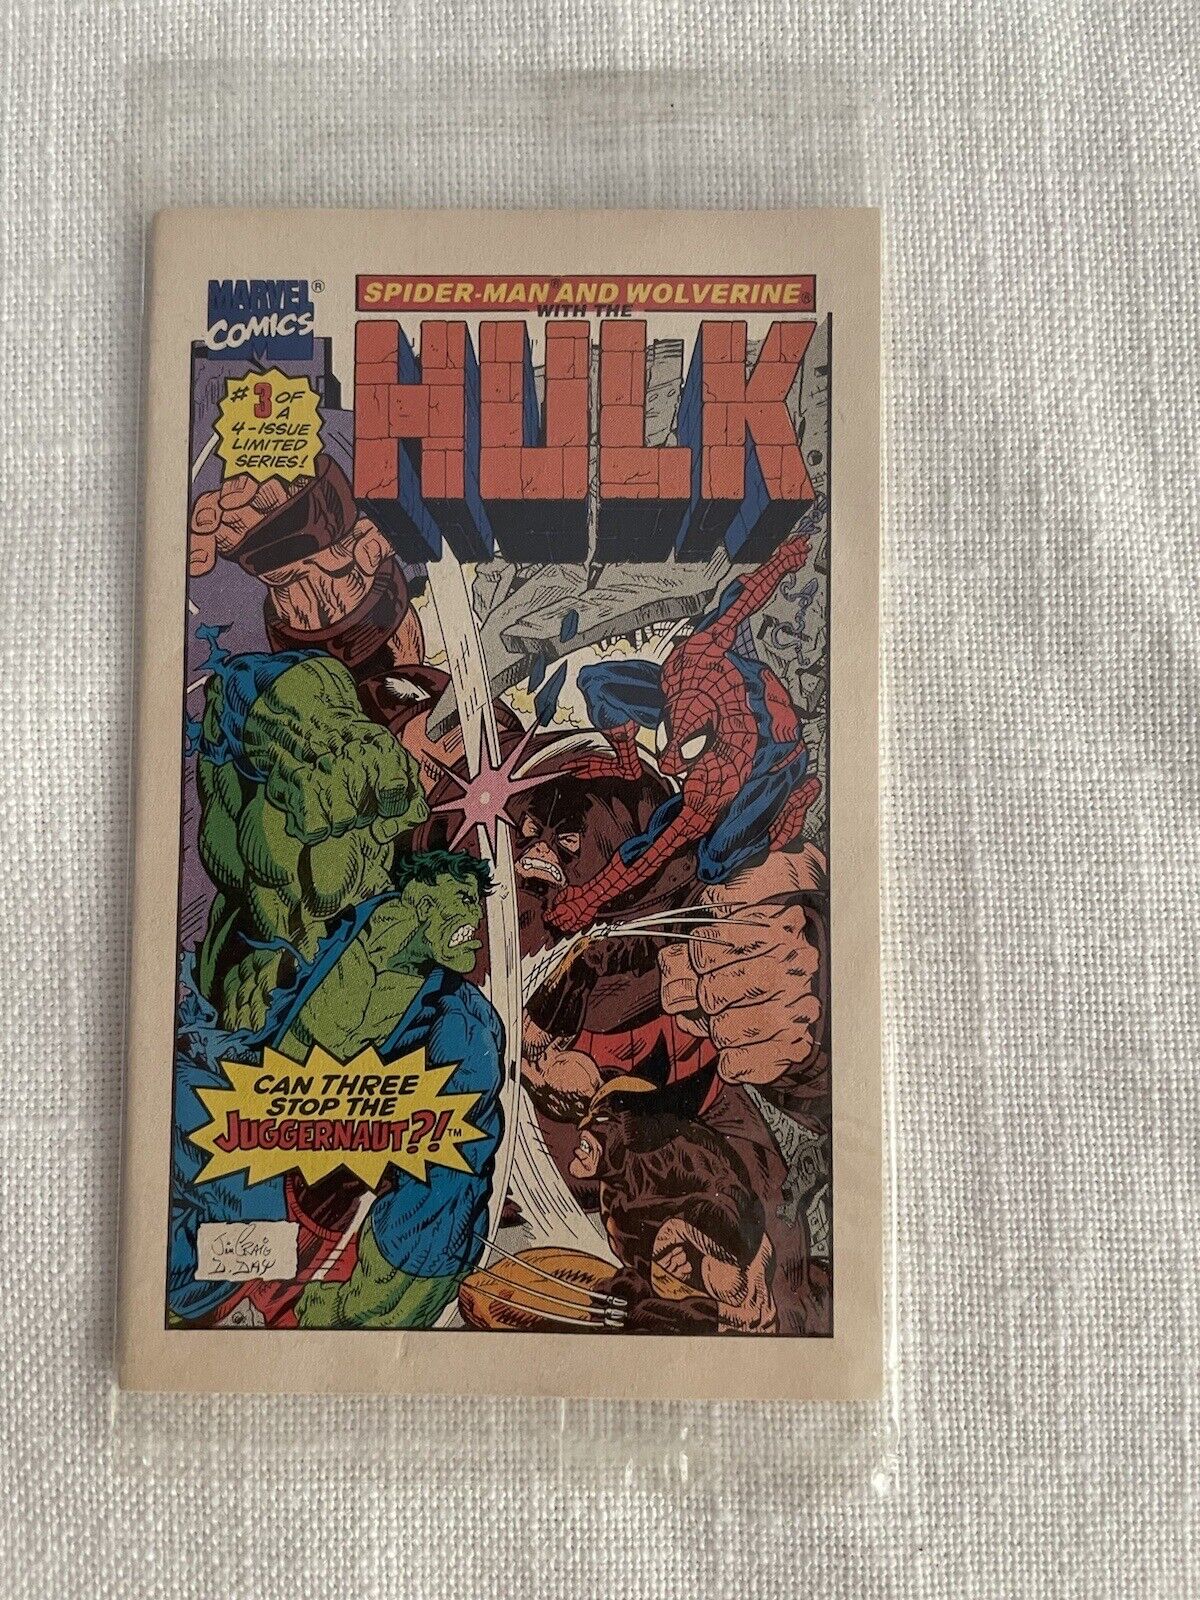 Marvel Mini Comics HULK, SPIDERMAN, THE SILVER SURFER Drakes Cakes Promo 1993